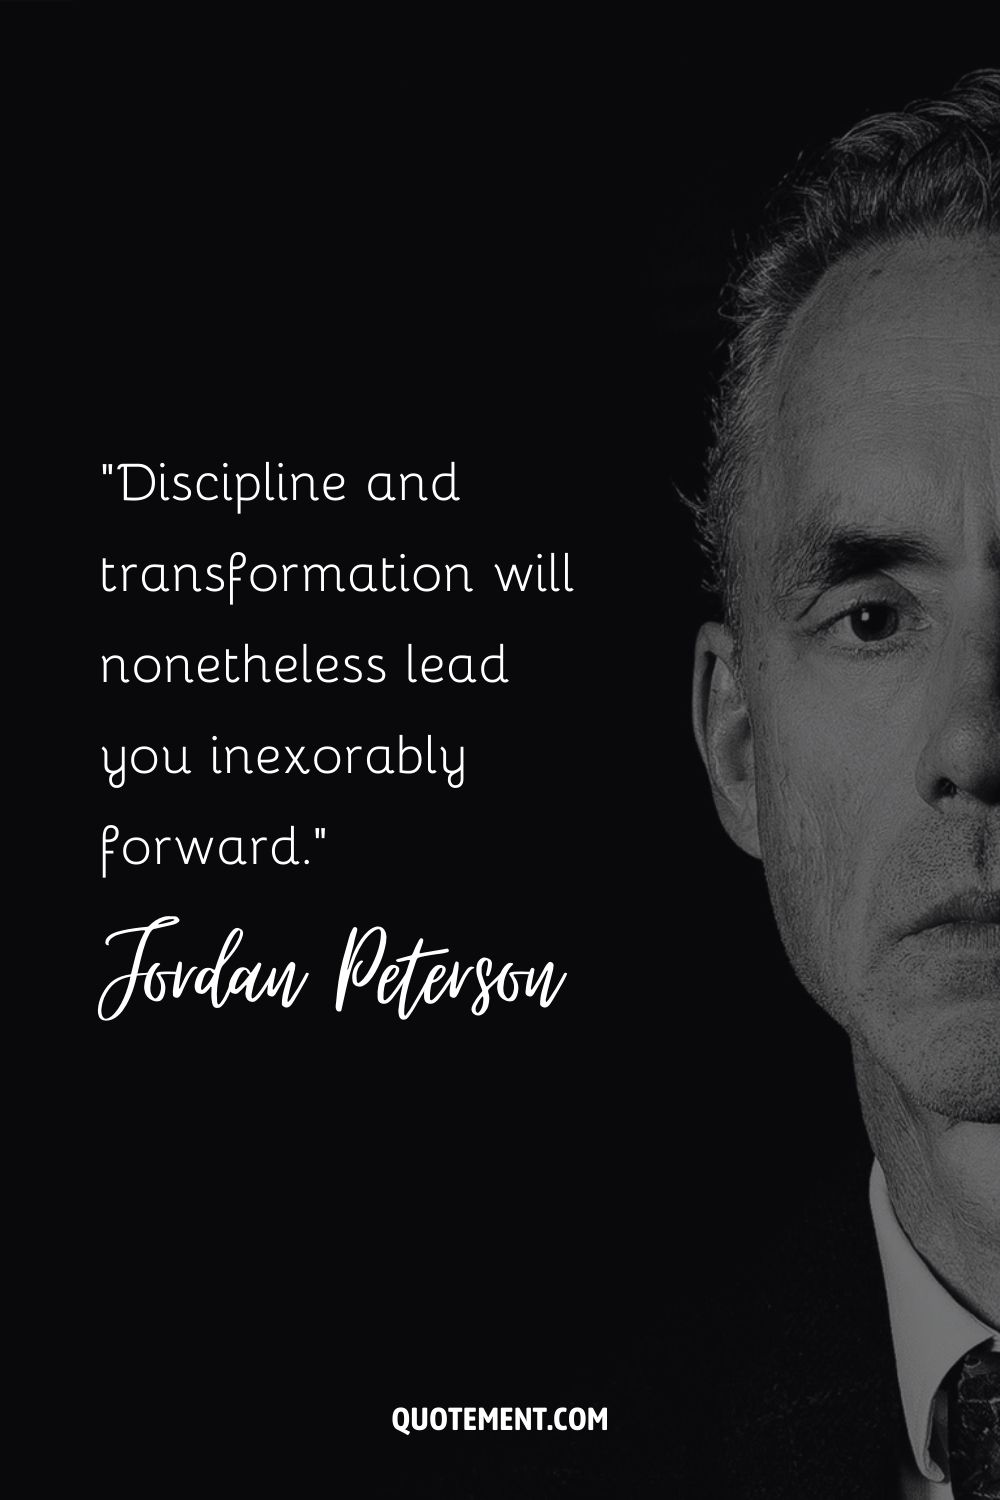 No obstante, la disciplina y la transformación te llevarán inexorablemente hacia adelante